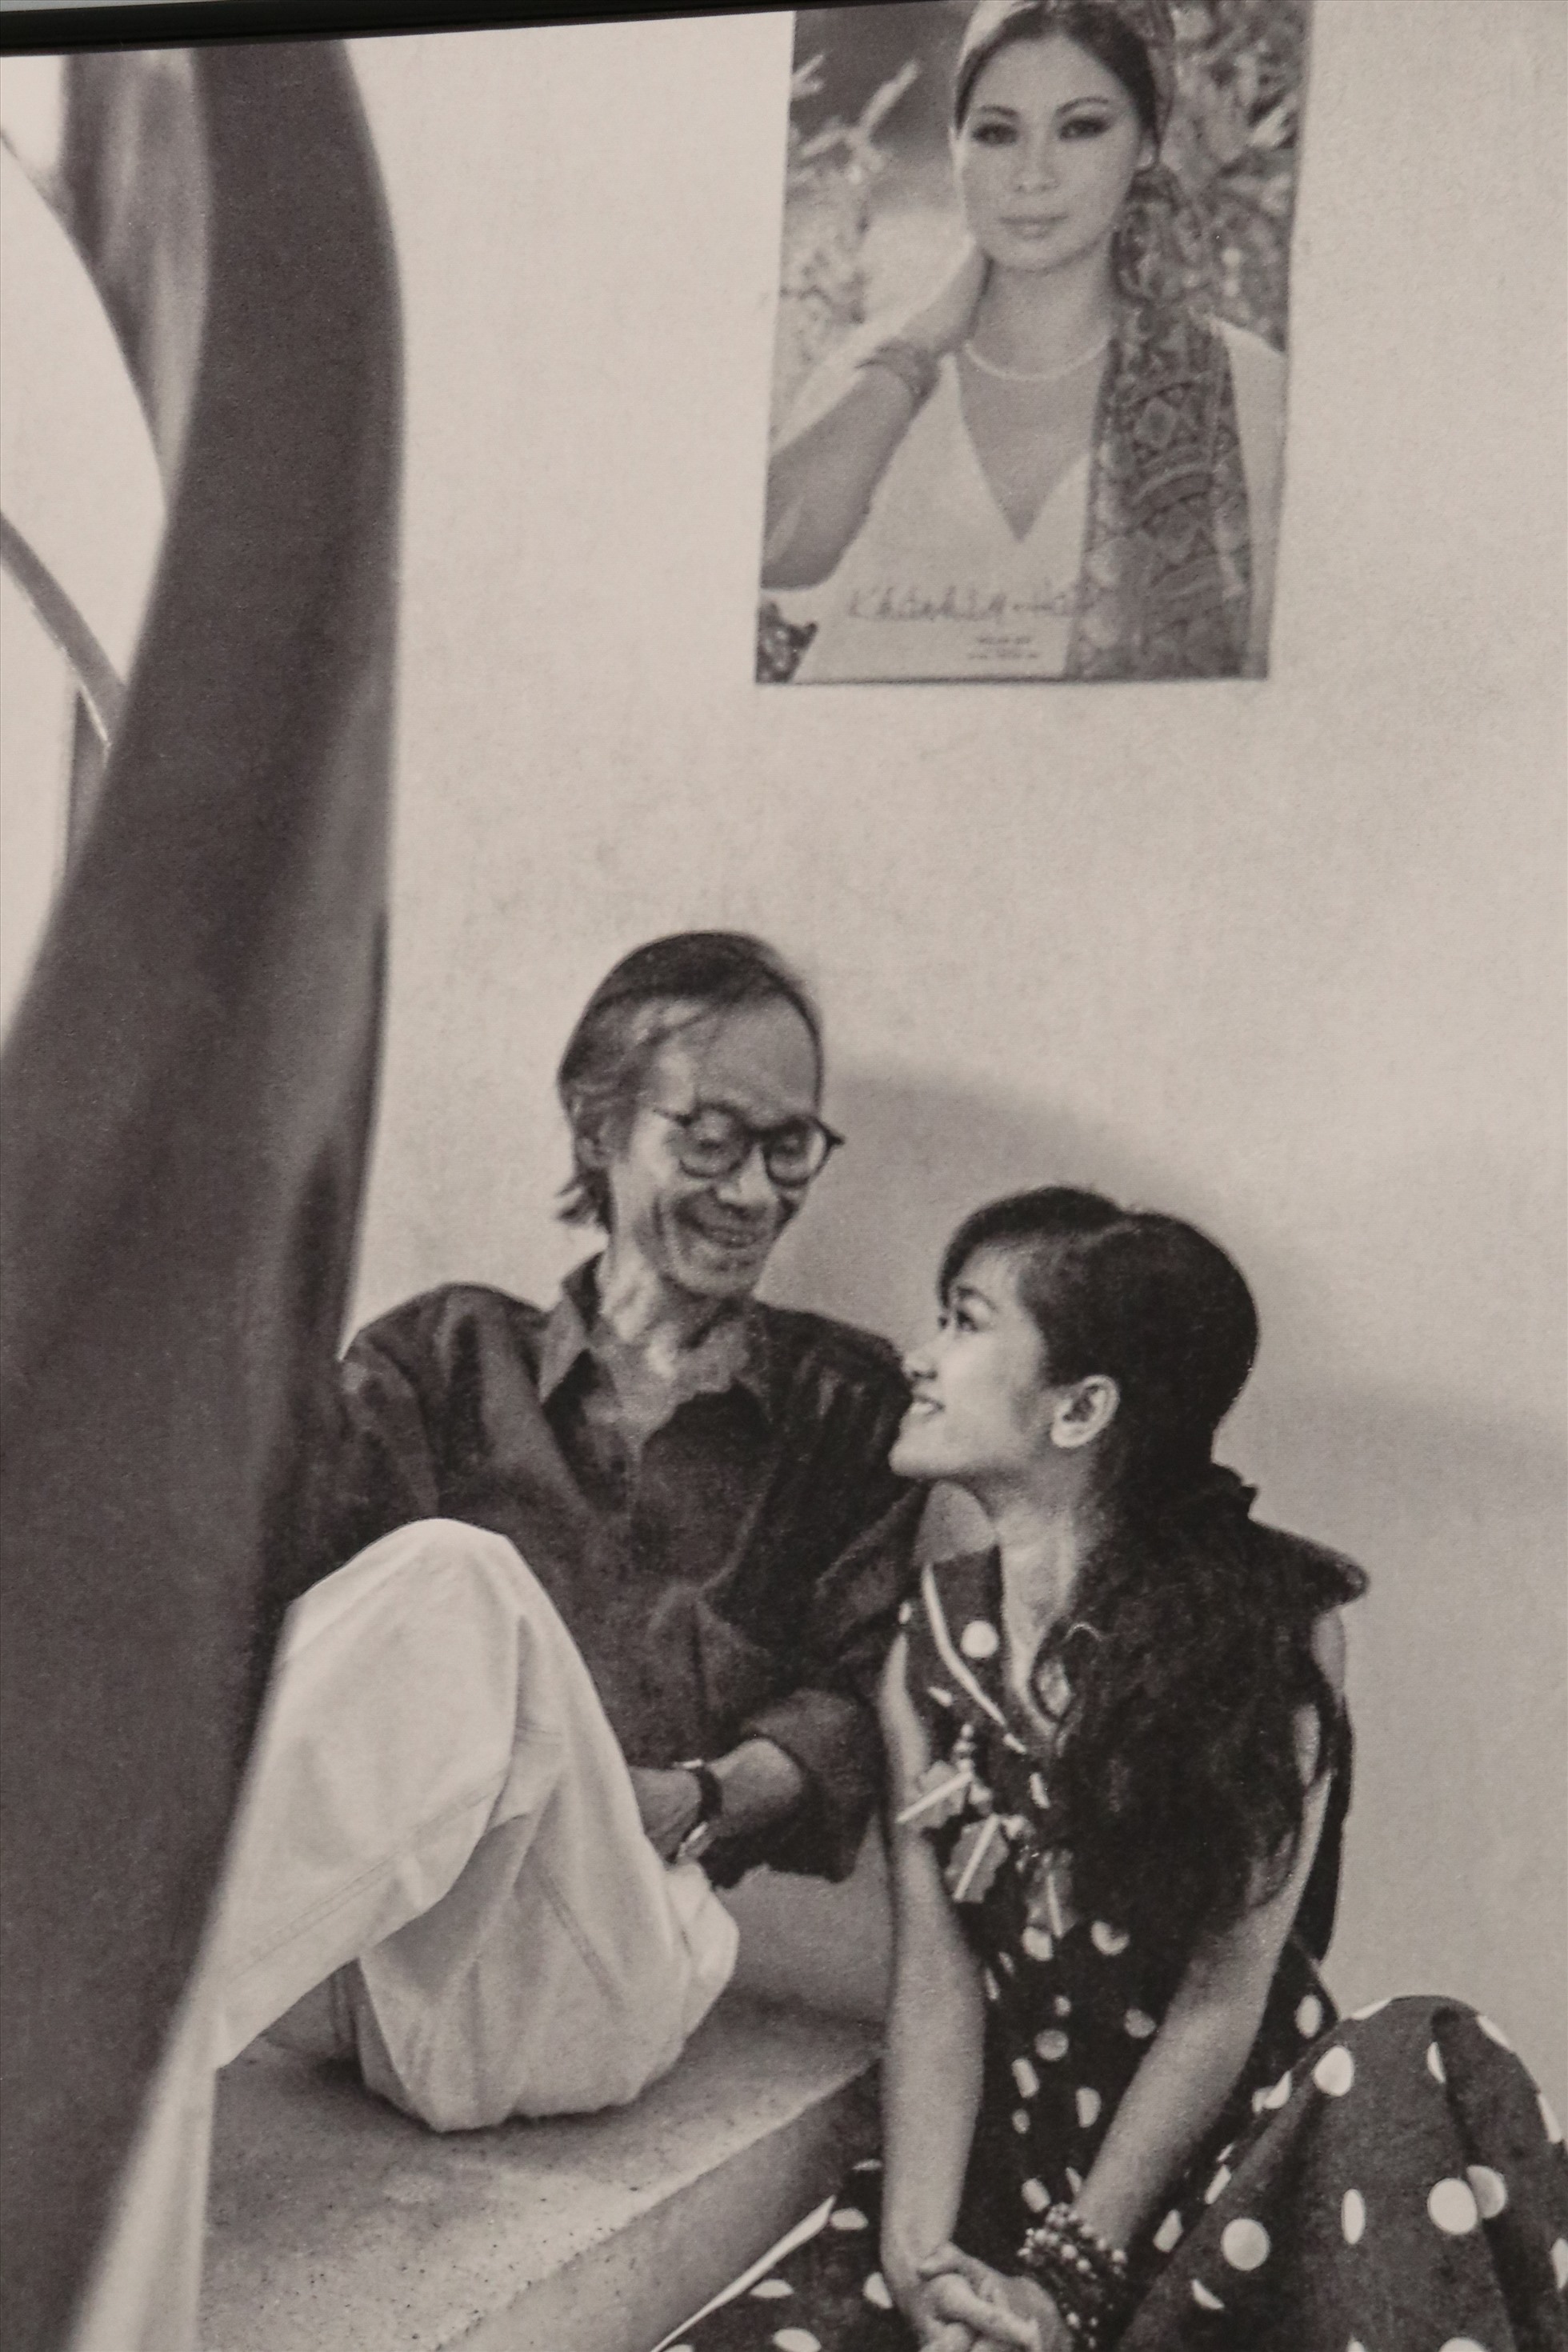 Cả hai ngồi bệt dưới chân cầu thang trò chuyện, phía trên dán poster bìa album “Hạ trắng” của Khánh Ly. Đây là thời điểm Hồng Nhung bắt đầu vào TPHCM lập nghiệp.